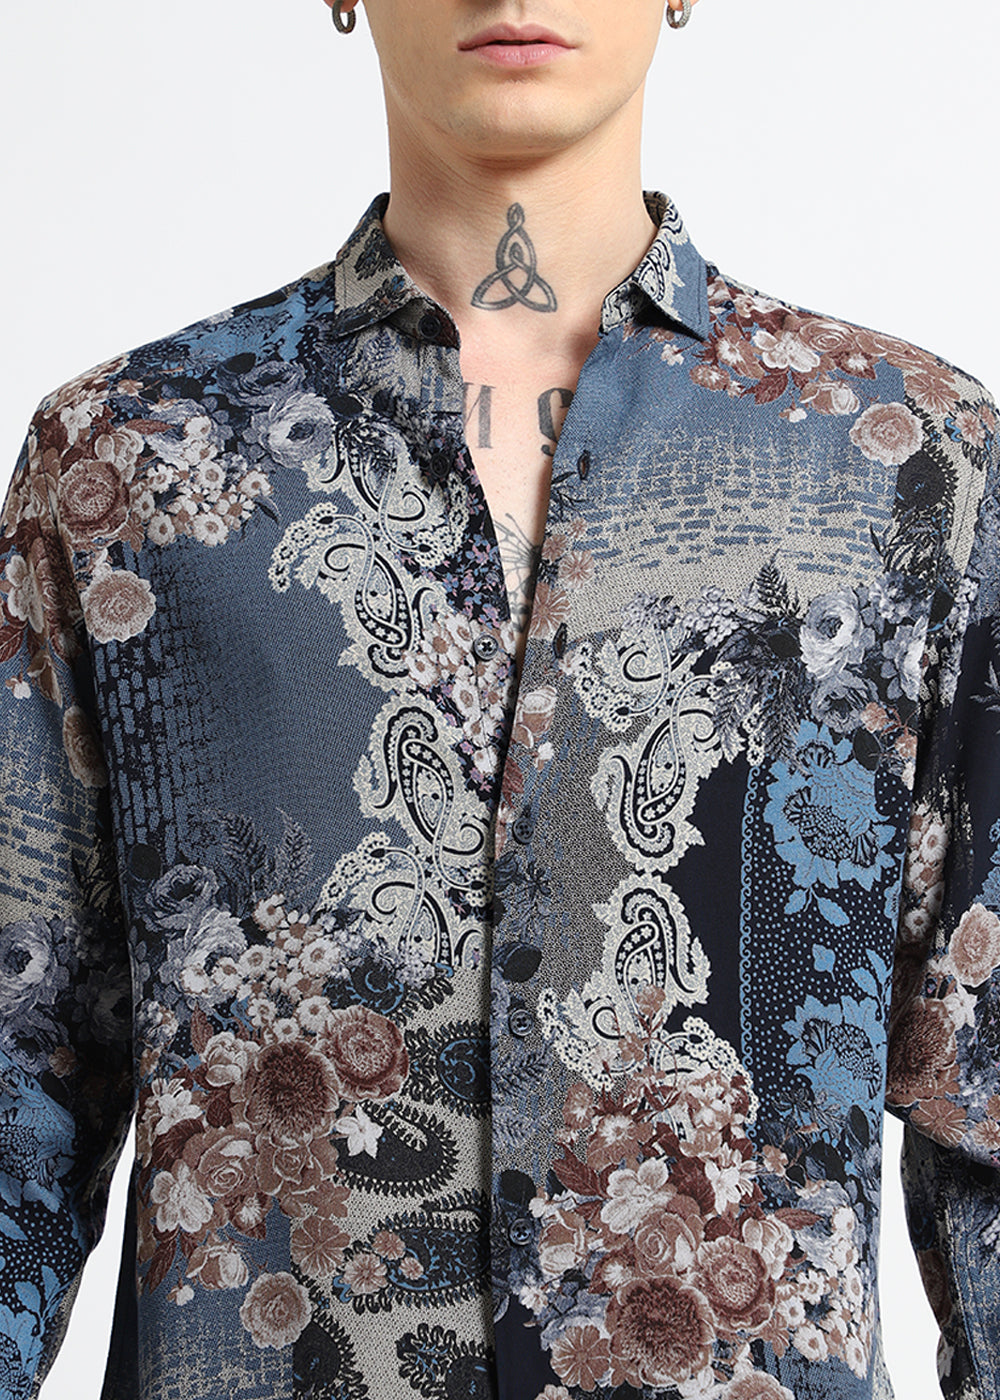 Florets Blue Feather shirt